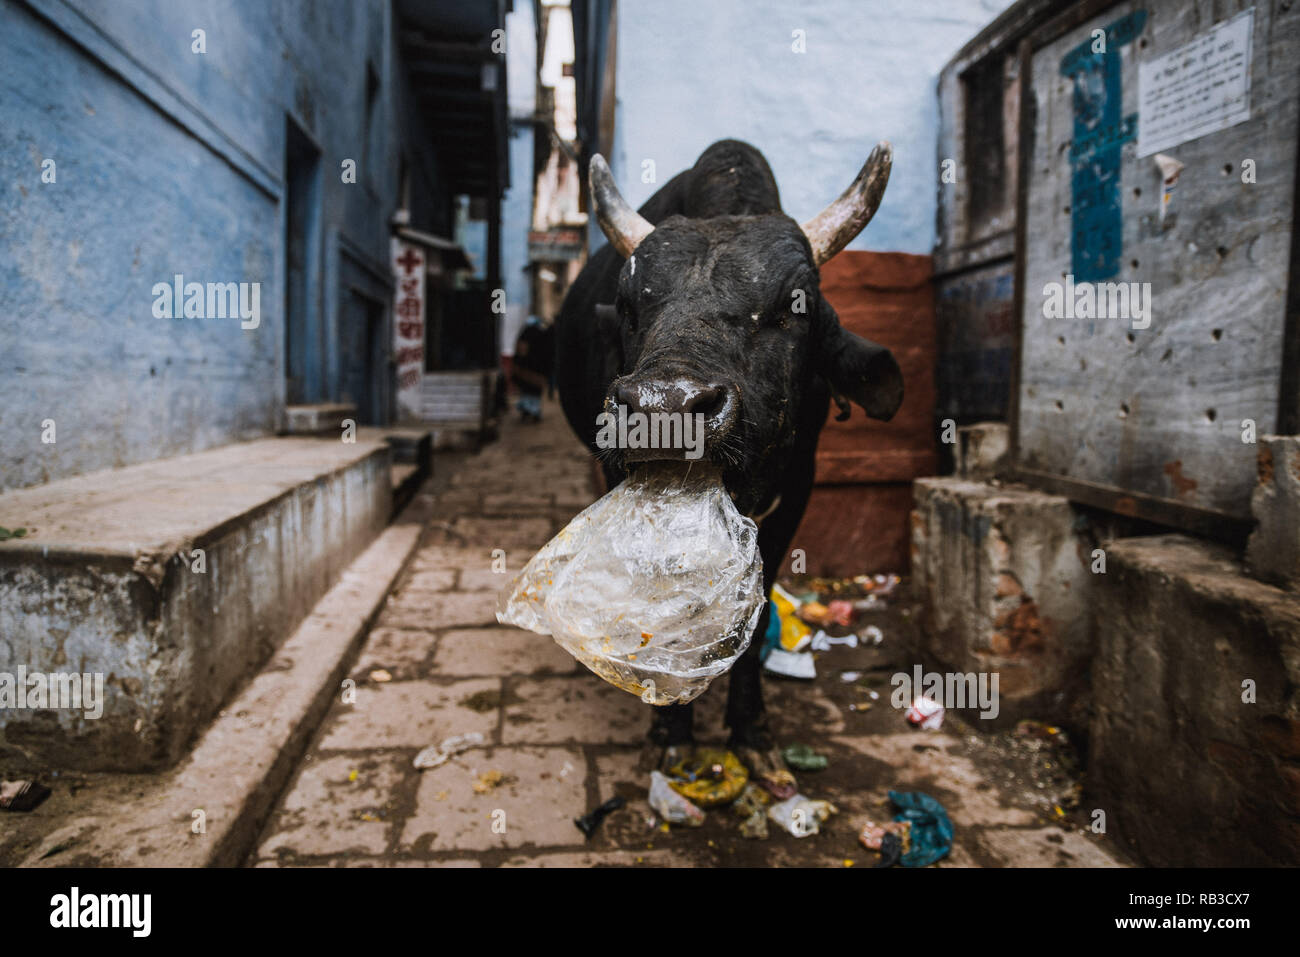 Une vache noire avec cornes blanches est en train de manger un sac de plastique des déchets dans les rues de Varanasi en Inde. Une petite rue avec des murs bleus. Banque D'Images